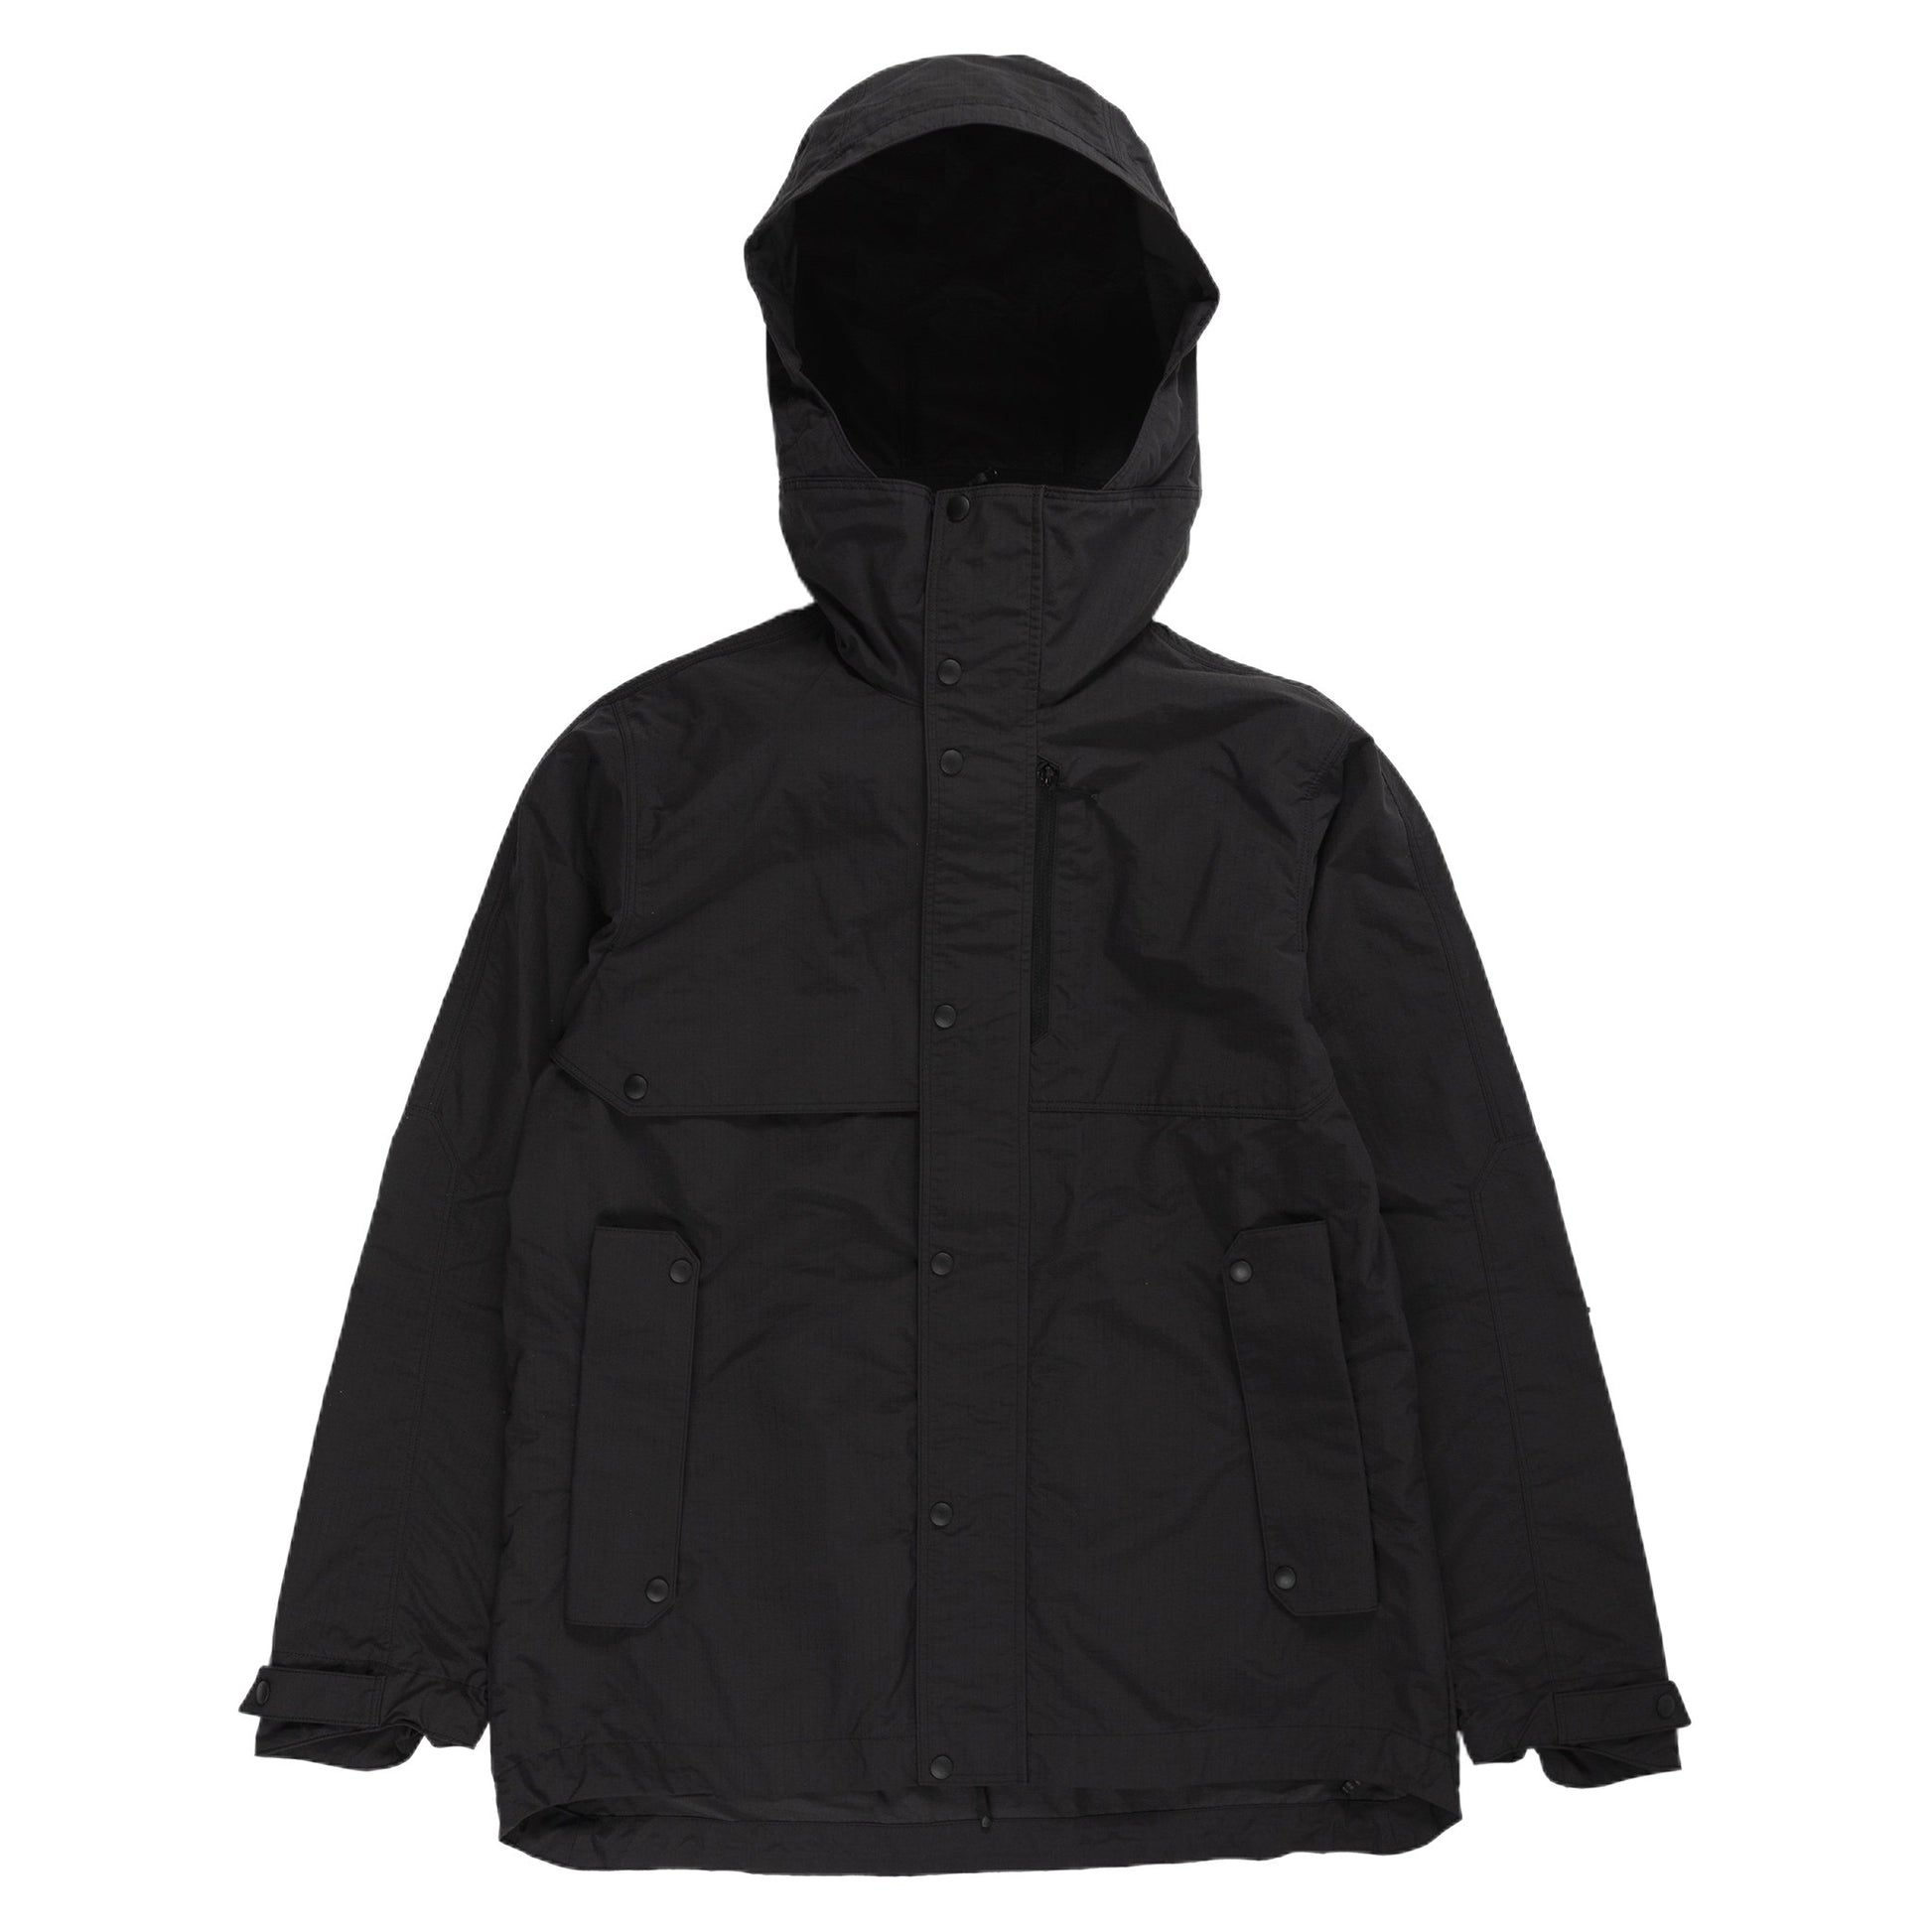 Goldwin Hooded Blouson Black rain gear all weather sportswear outerwear hooded front